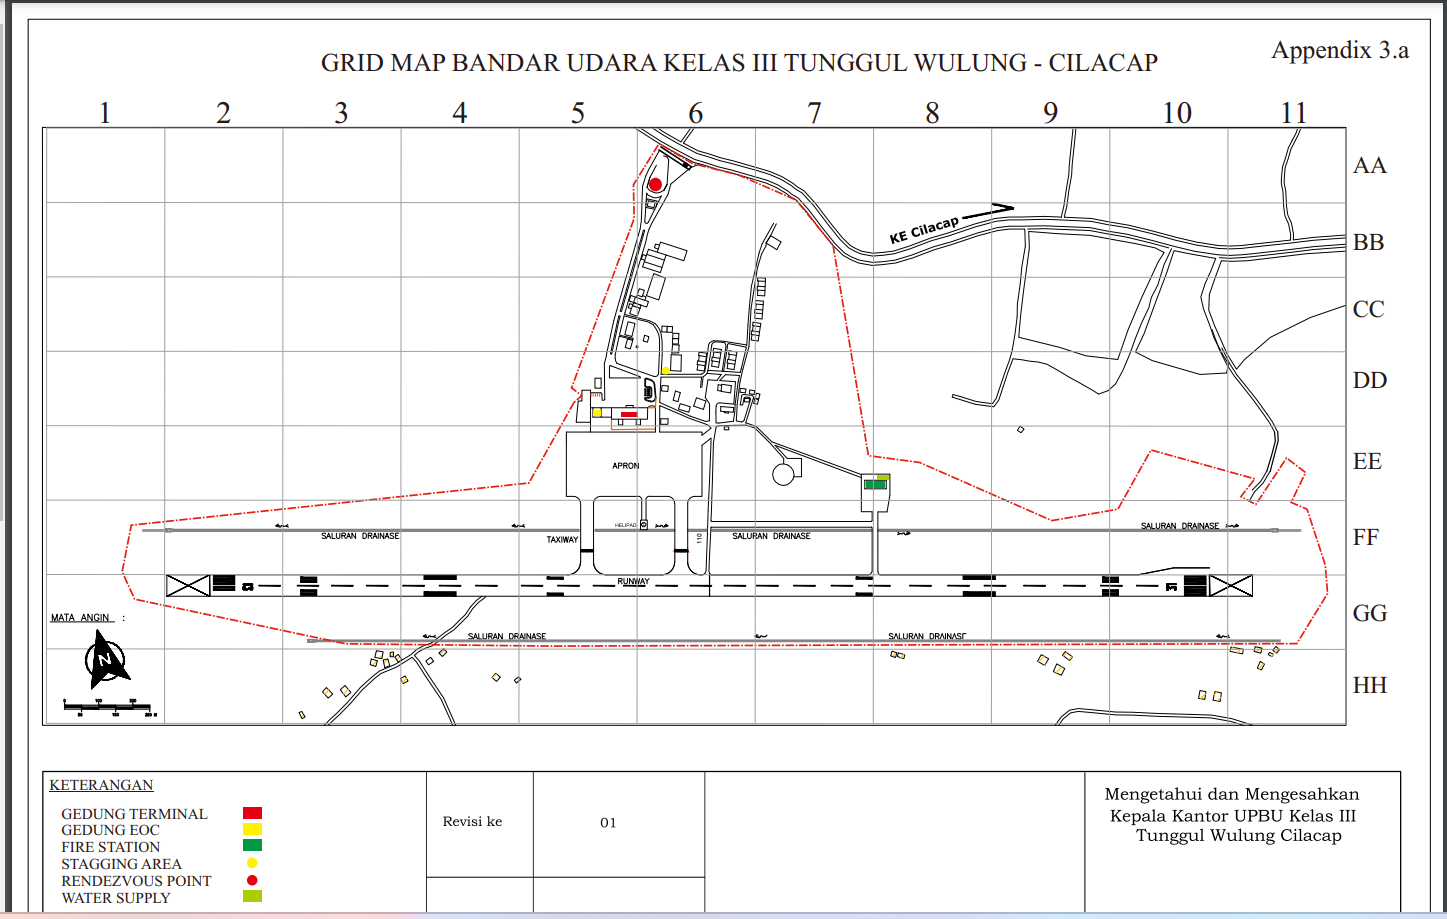 Gambar Peta Bandara Peta Bandara Tunggul Wulung Cilacap